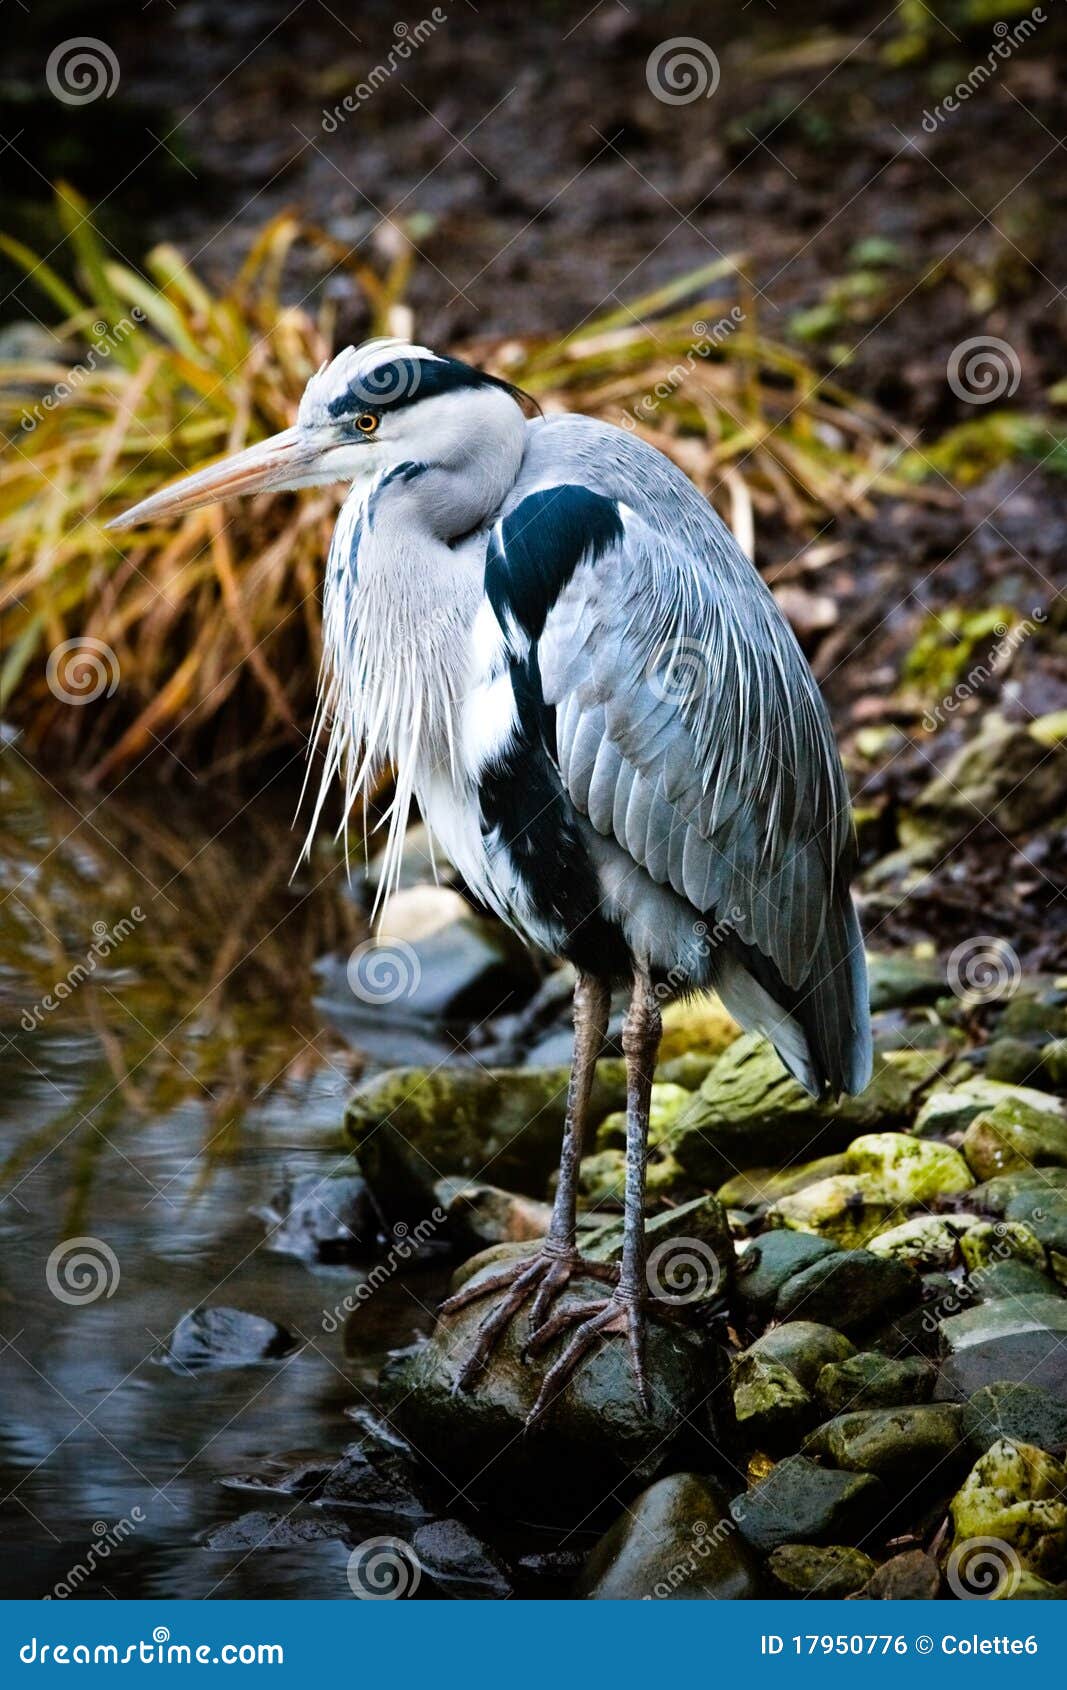 grey heron at the waterside